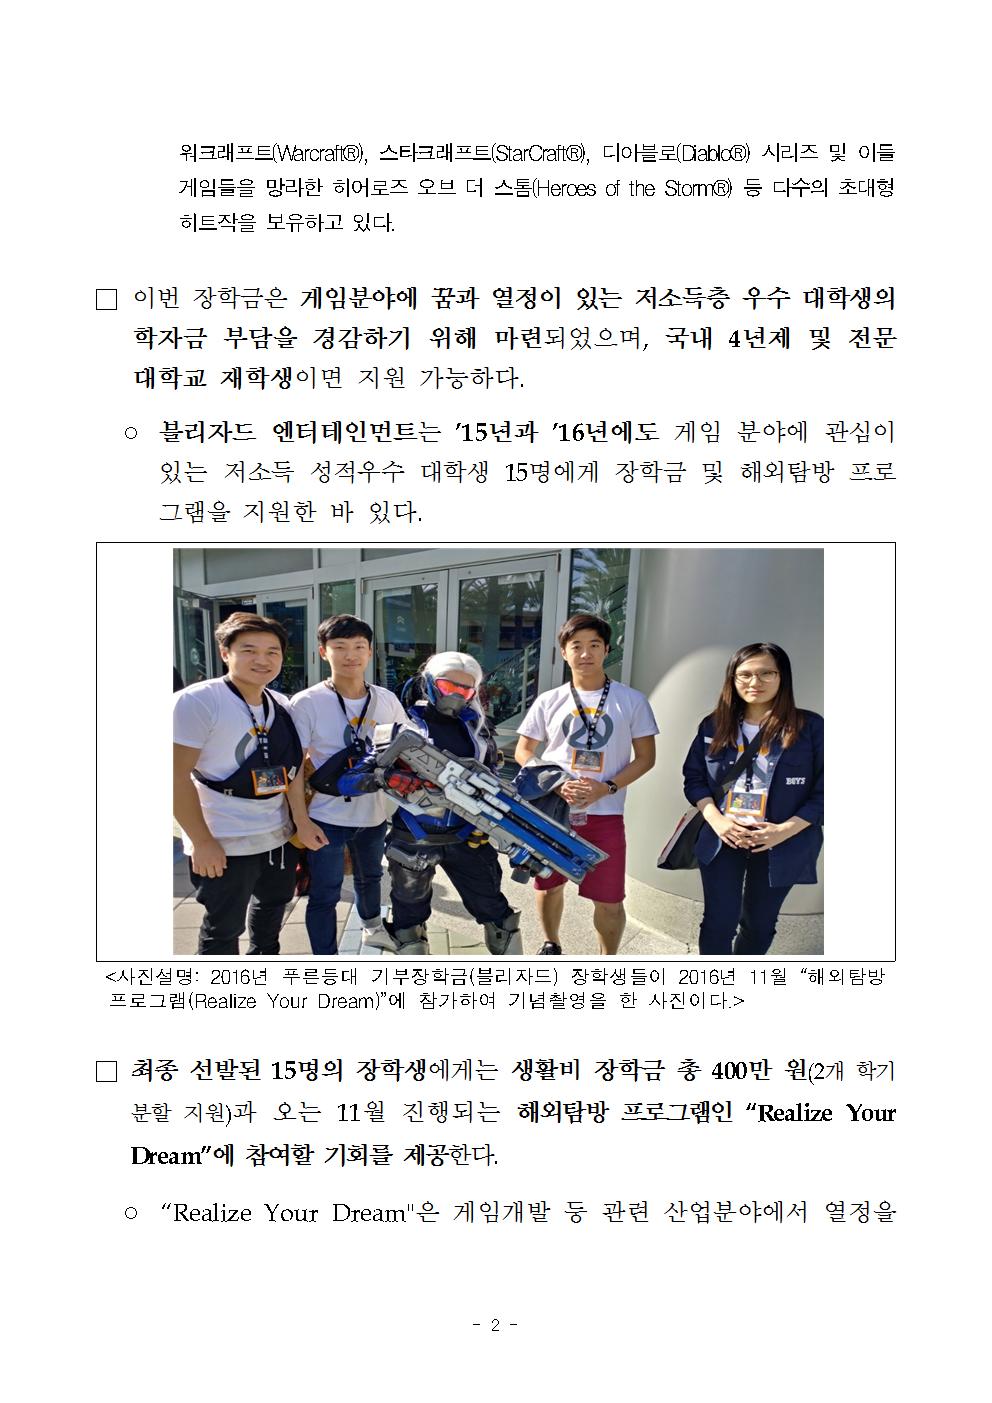 09-14(목)[보도자료] 한국장학재단, 저소득층 푸른등대 기부장학생(블리자드) 선발002.jpg